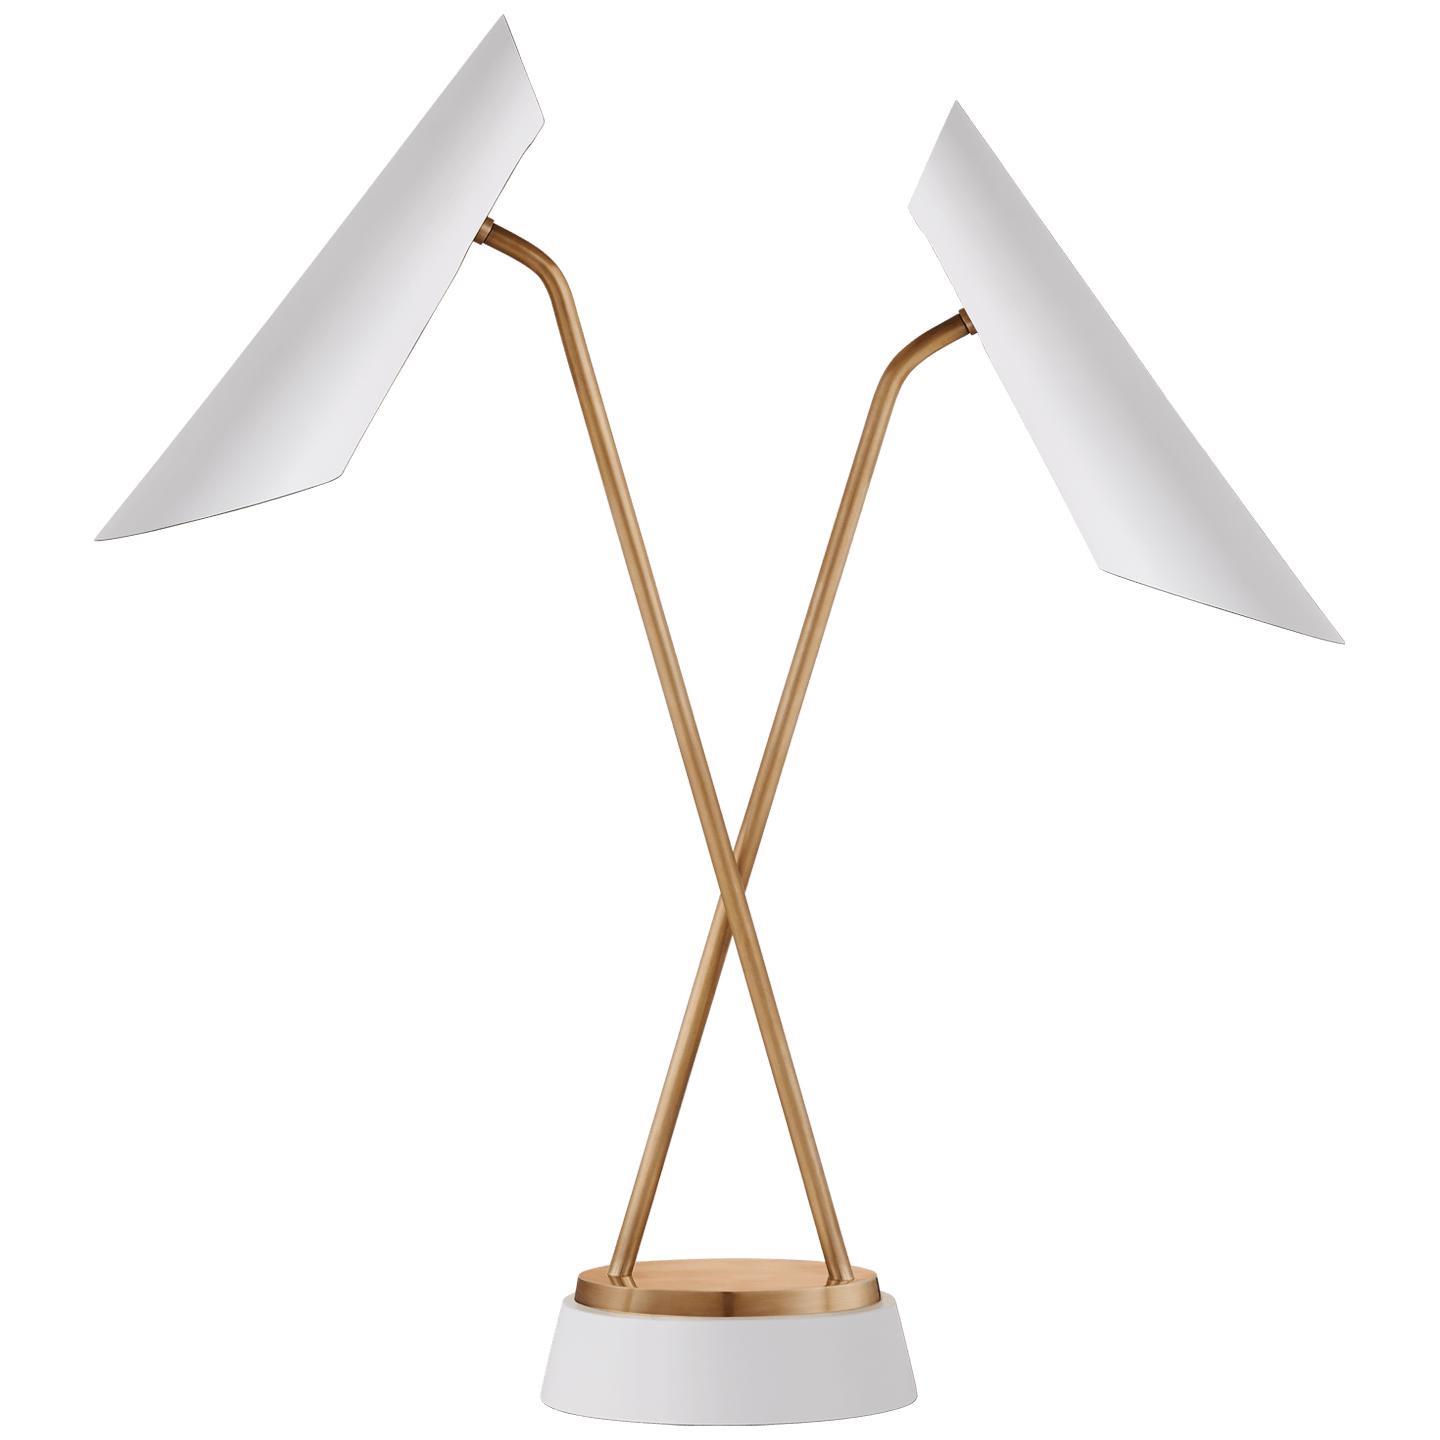 Купить Рабочая лампа Franca Double Pivoting Task Lamp в интернет-магазине roooms.ru